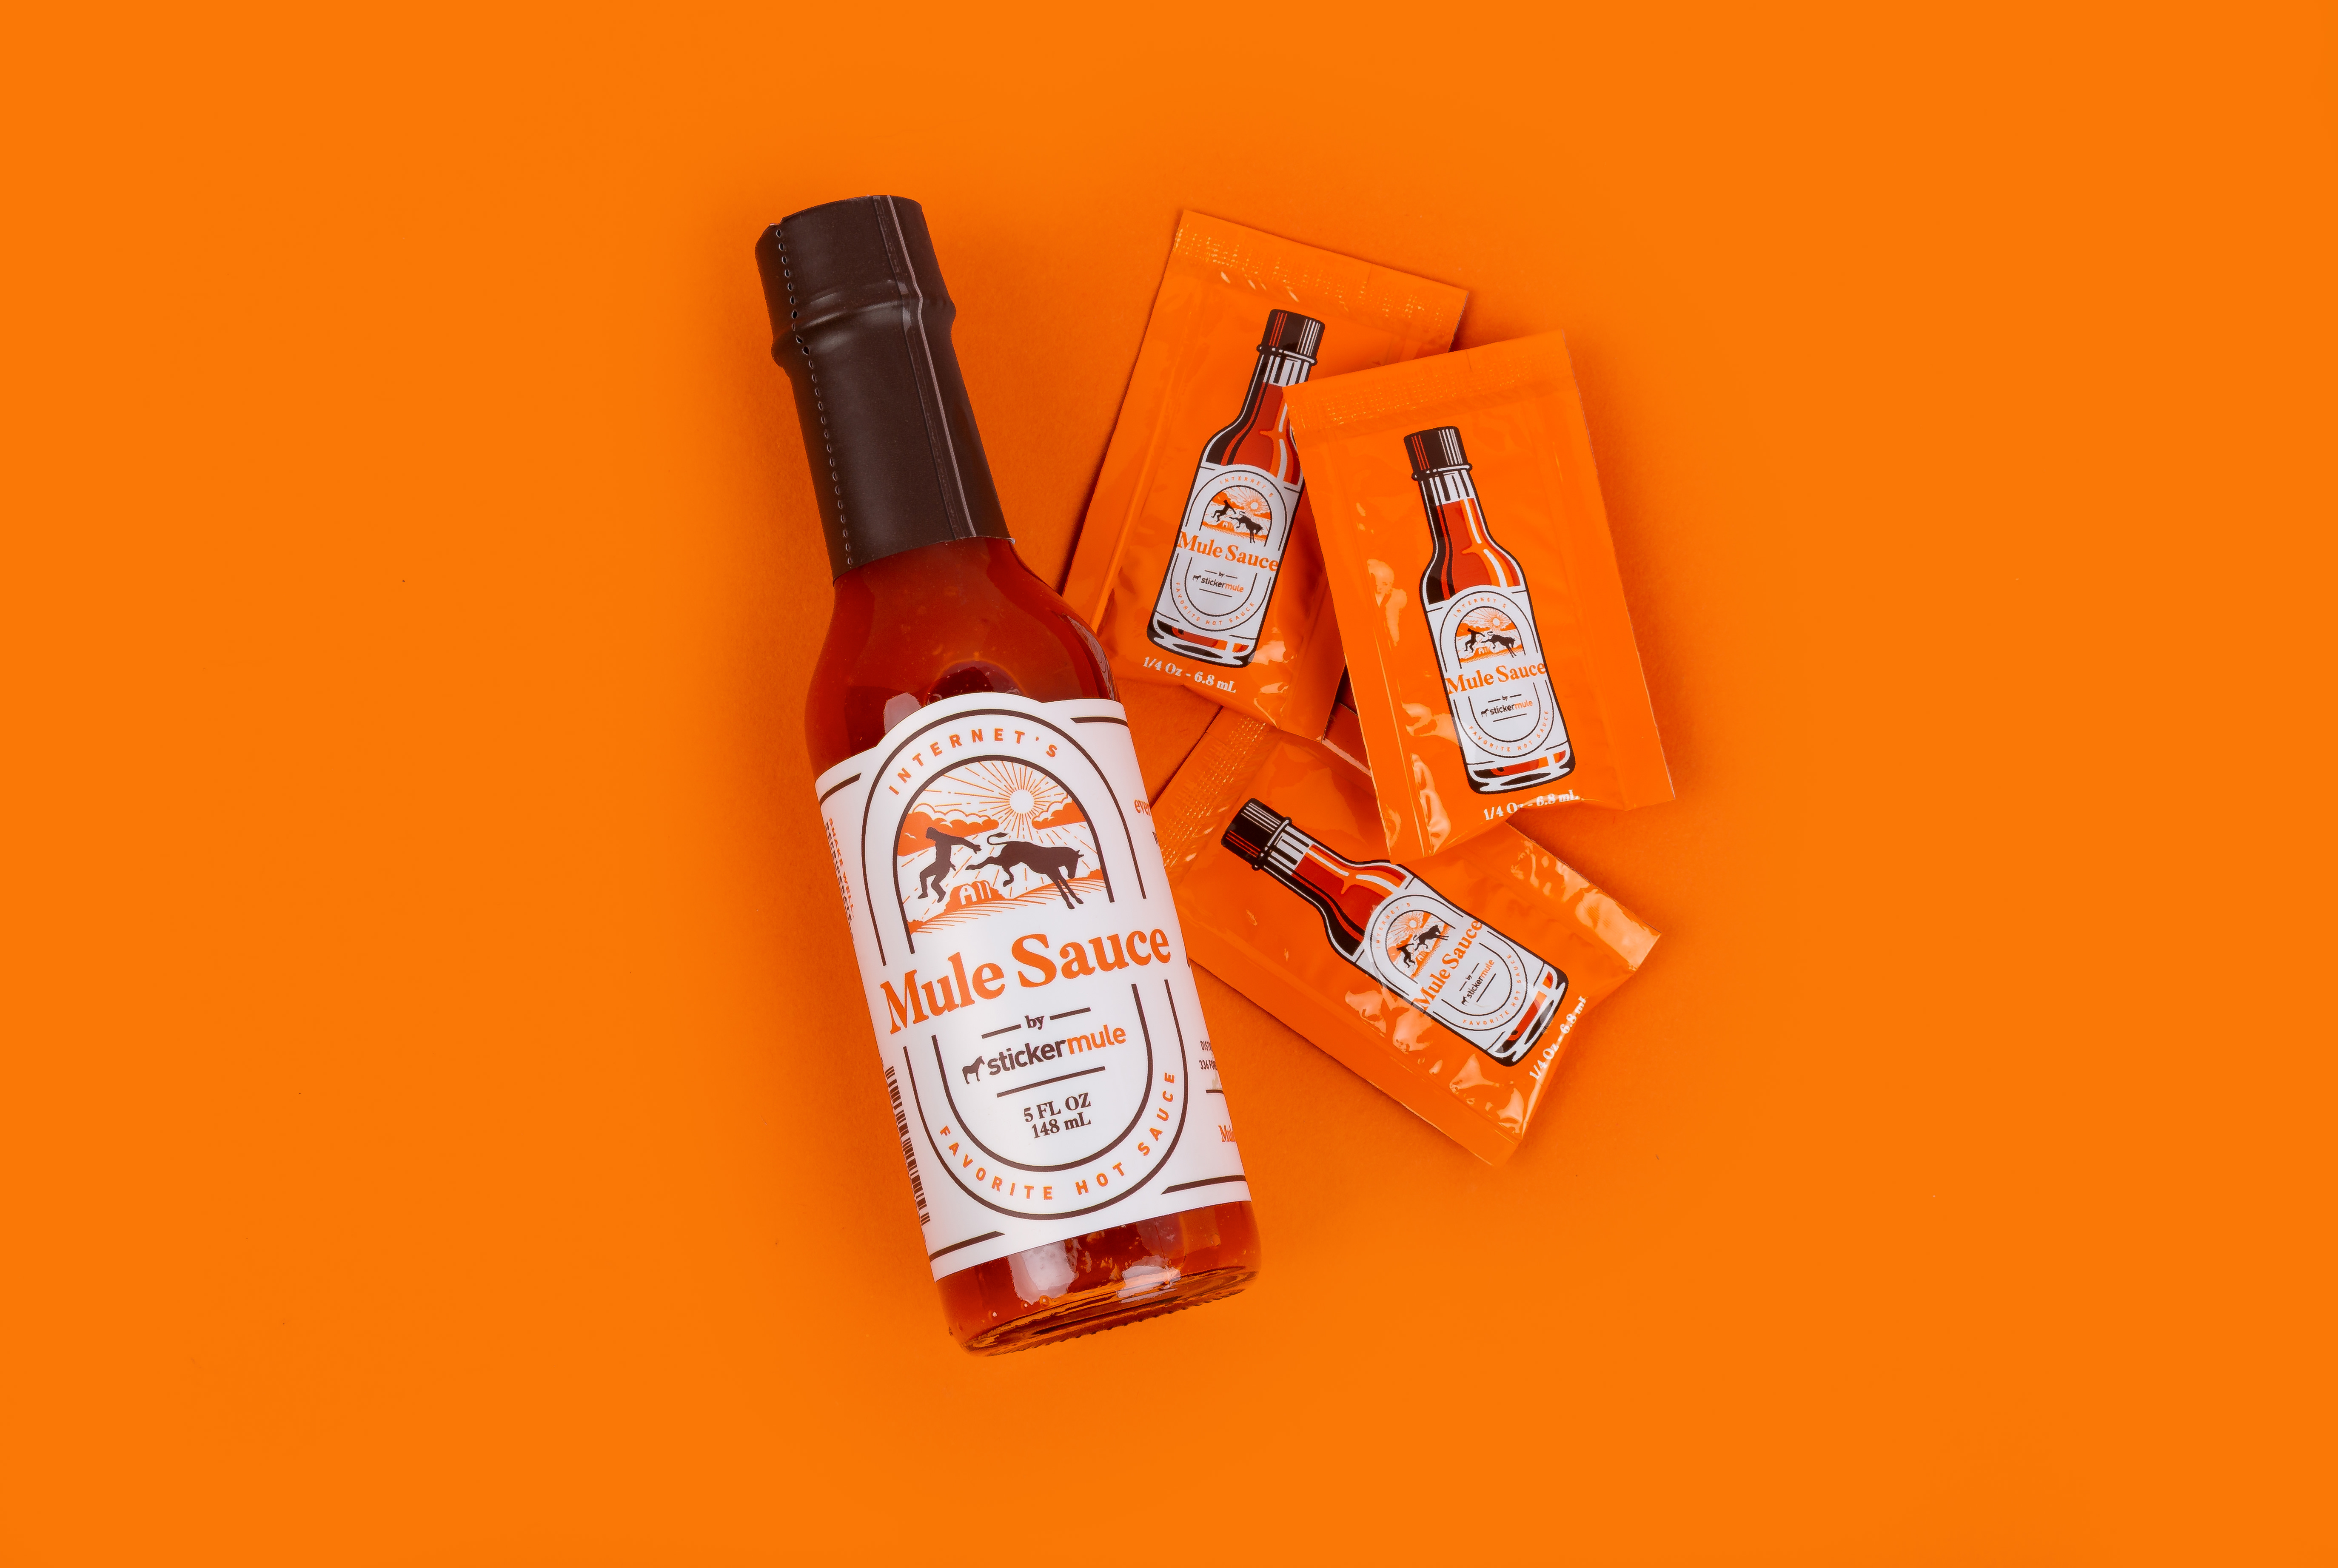 Mule Sauce scharfe Soße Flasche neben Mule Sauce Päckchen auf orangefarbenem Hintergrund